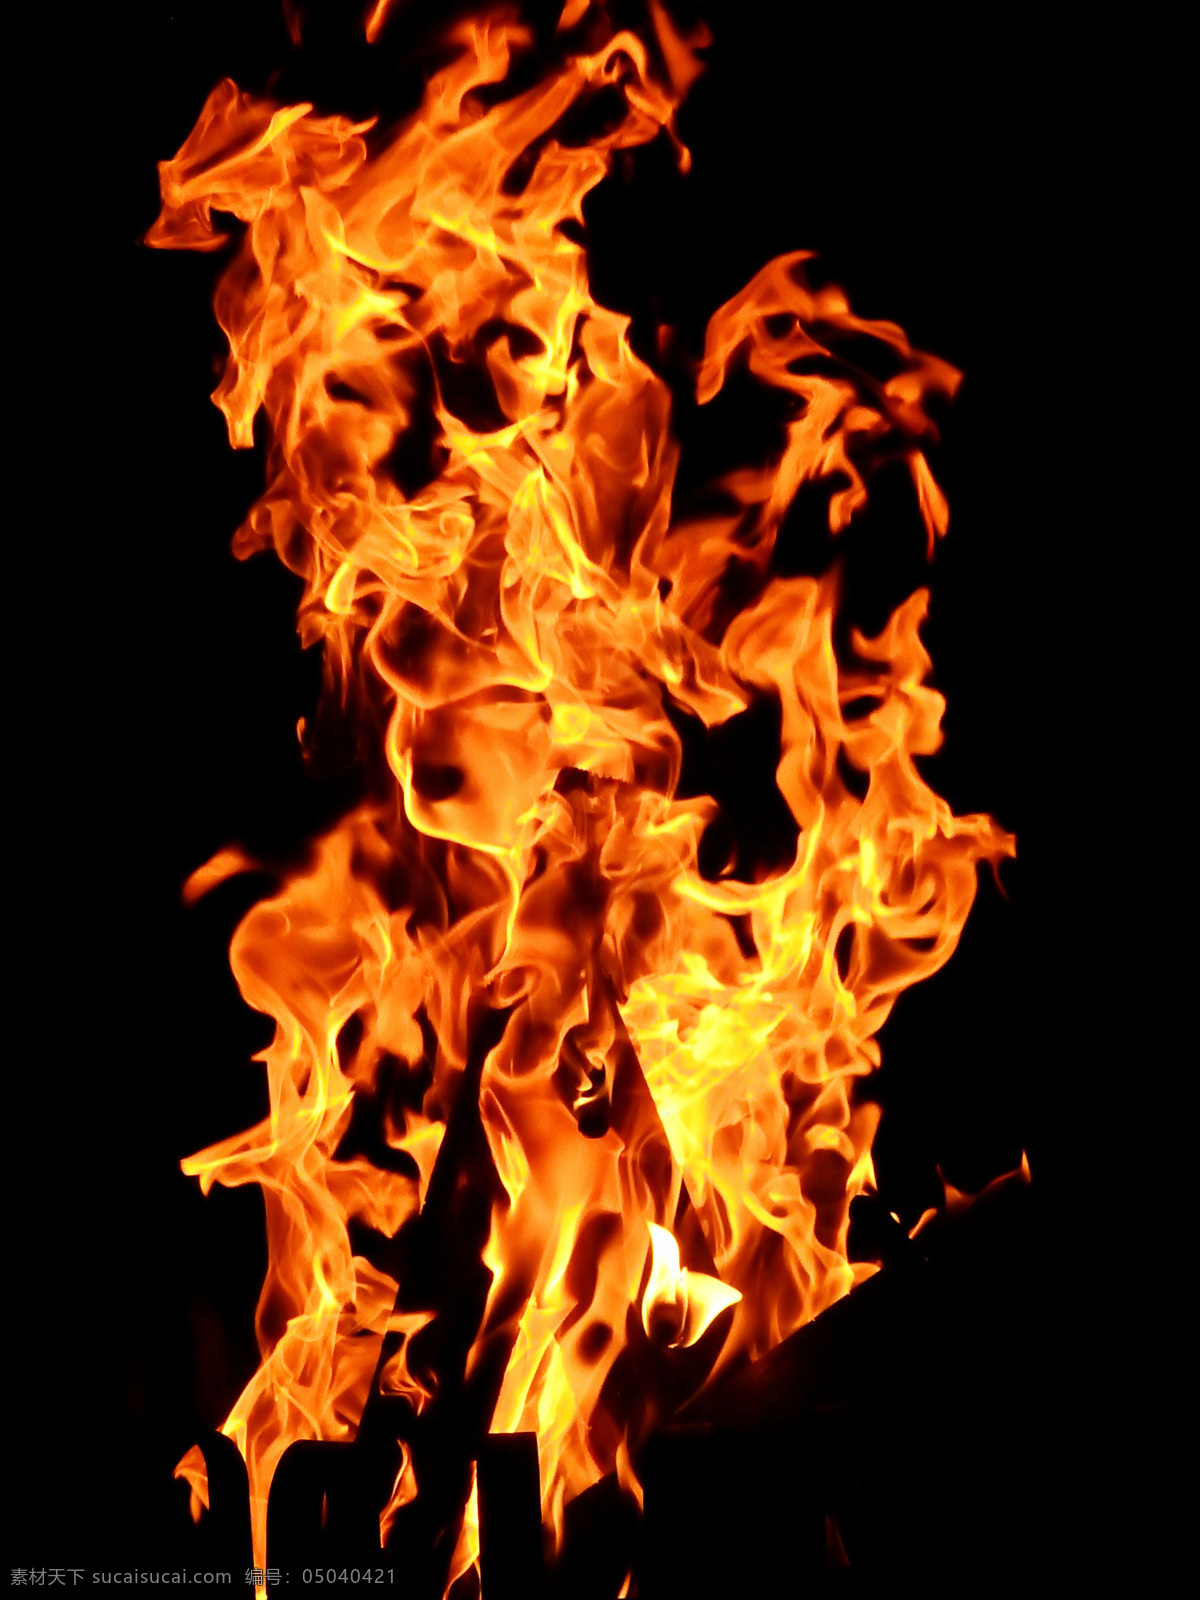 火焰图片 火焰素材 火焰壁纸 烟雾 粉尘 背景图片 背景素材 壁纸 创意图片 烟 材质 纹理 火苗 火炬 热 火球 易燃 点燃 摄影拍摄